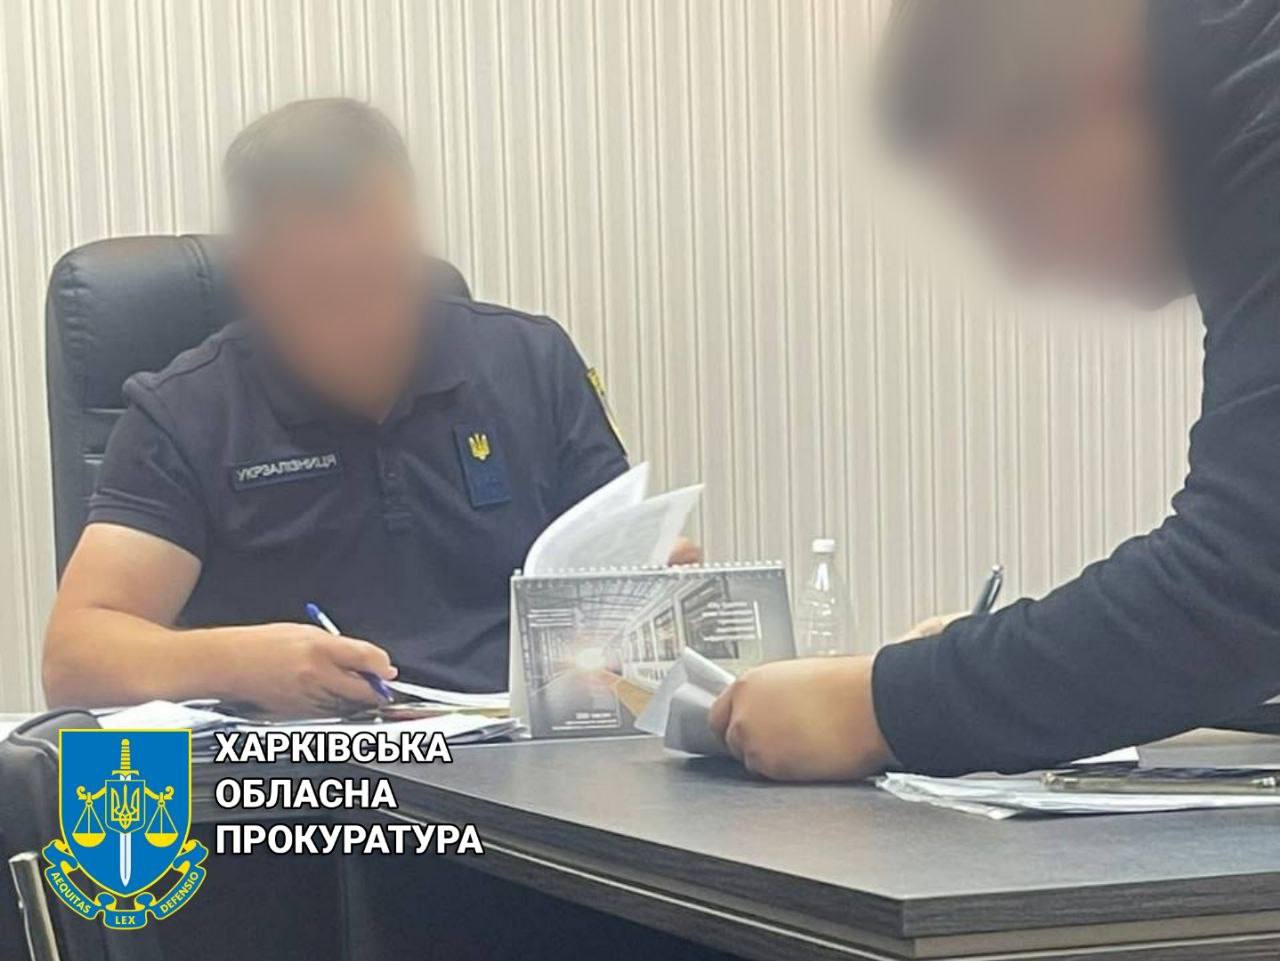 Збитки державі на суму 1,5 млн гривень: підозрюється службова особа регіональної філії Укрзалізниці